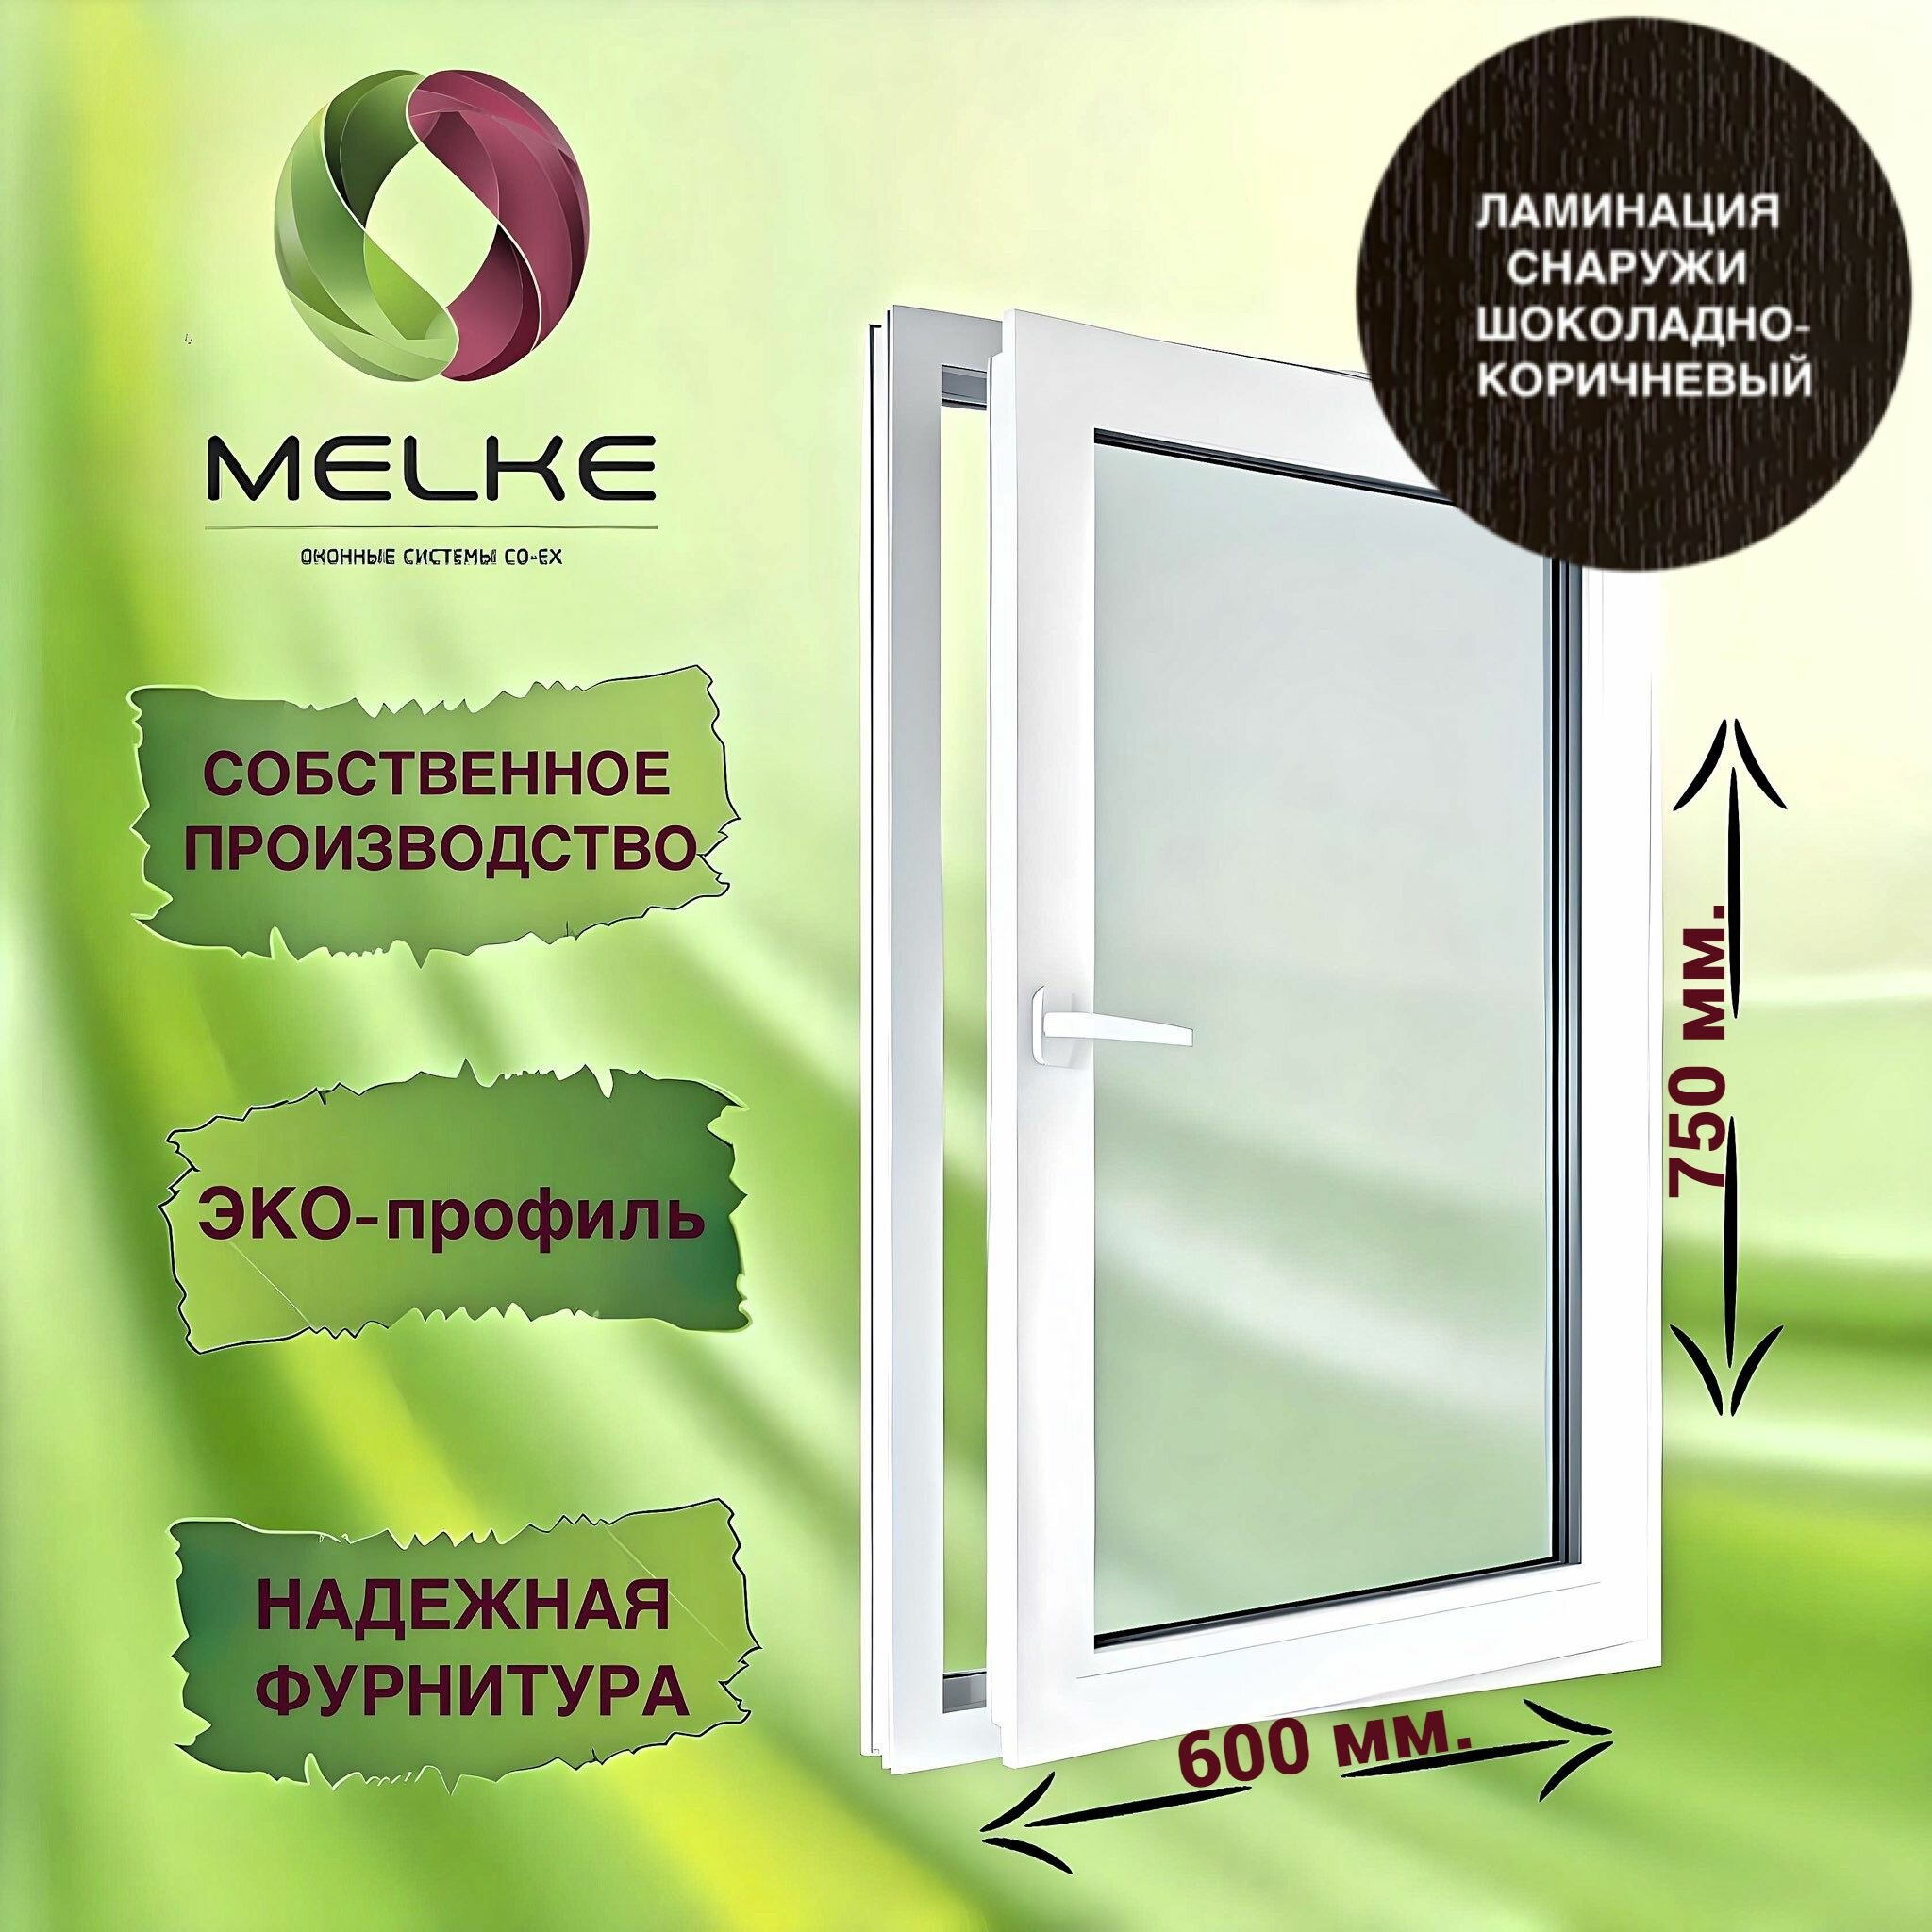 Окно 750 х 600 мм, Melke 60 (Фурнитура FUTURUSS), правое одностворчатое, поворотно-откидное, цвет внешней ламинации Шоколадно-коричневый, 2-х камерный стеклопакет, 3 стекла